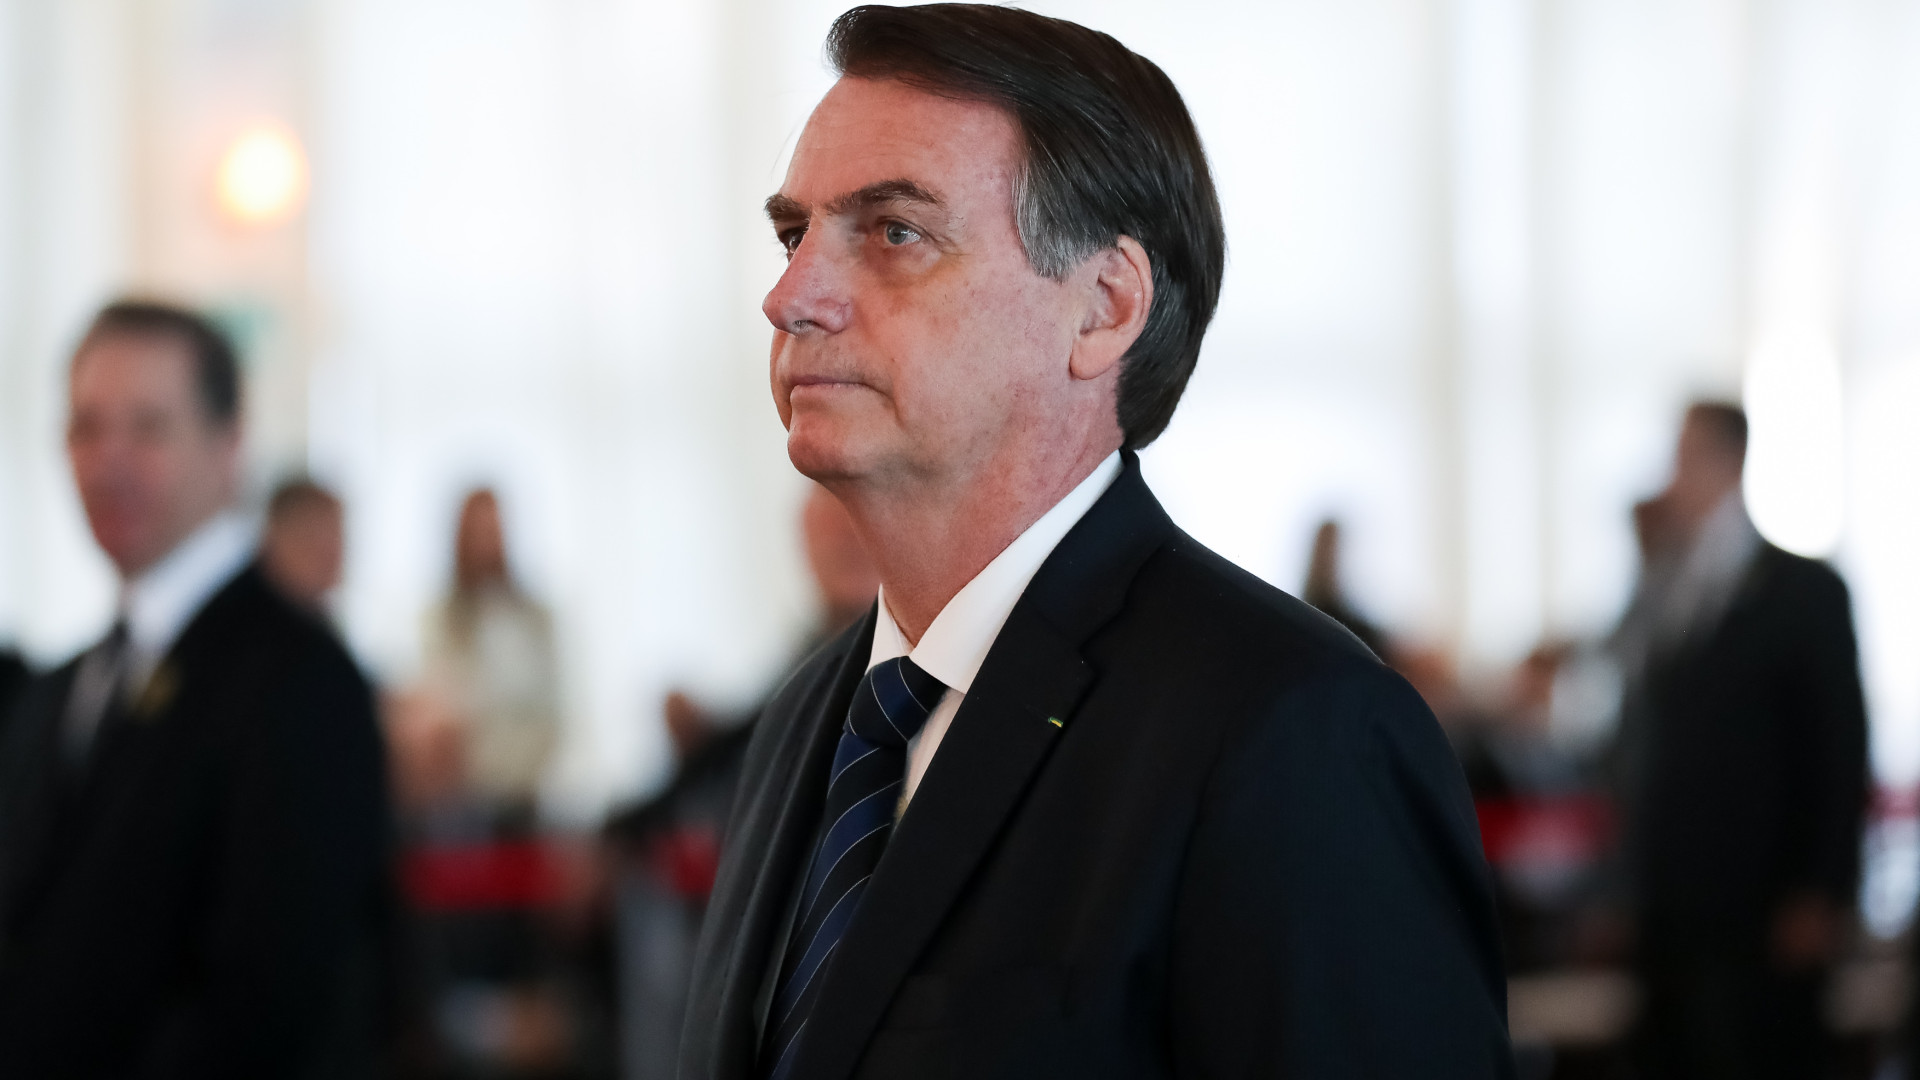 Queda dos sigilos: Bolsonaro gastou R$ 27,6 milhões no cartão corporativo